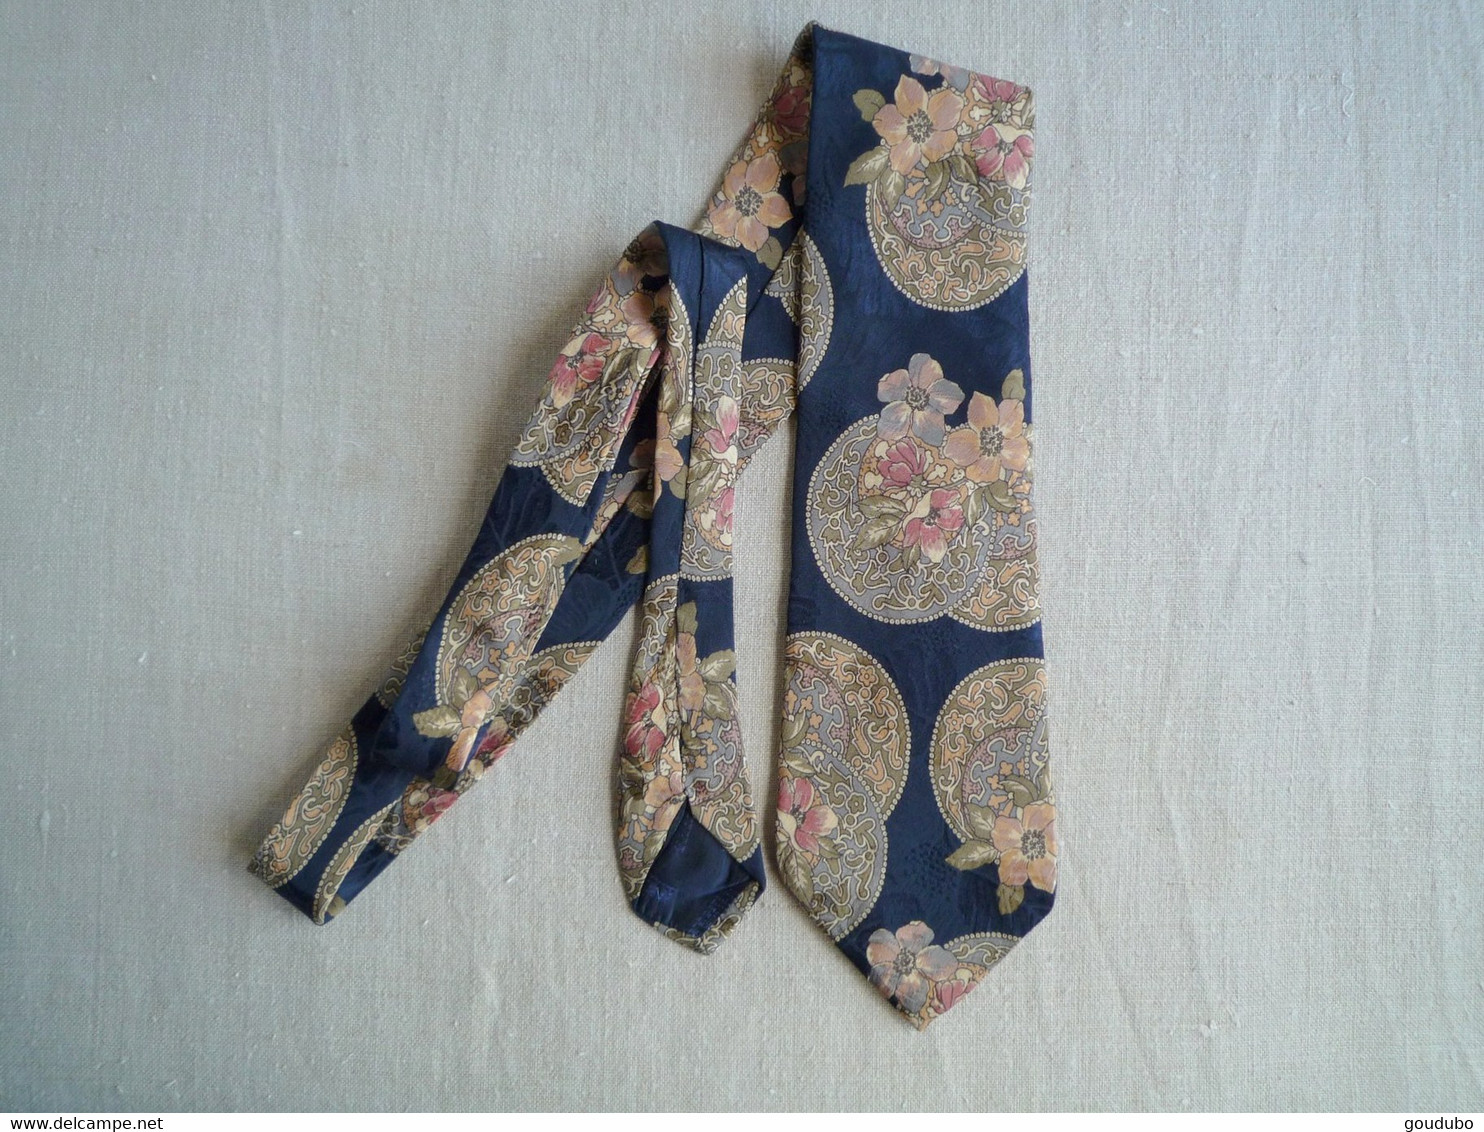 Cravate Bettini Bleu Marine Fleurs Plateu Moiré Soie - Cravates